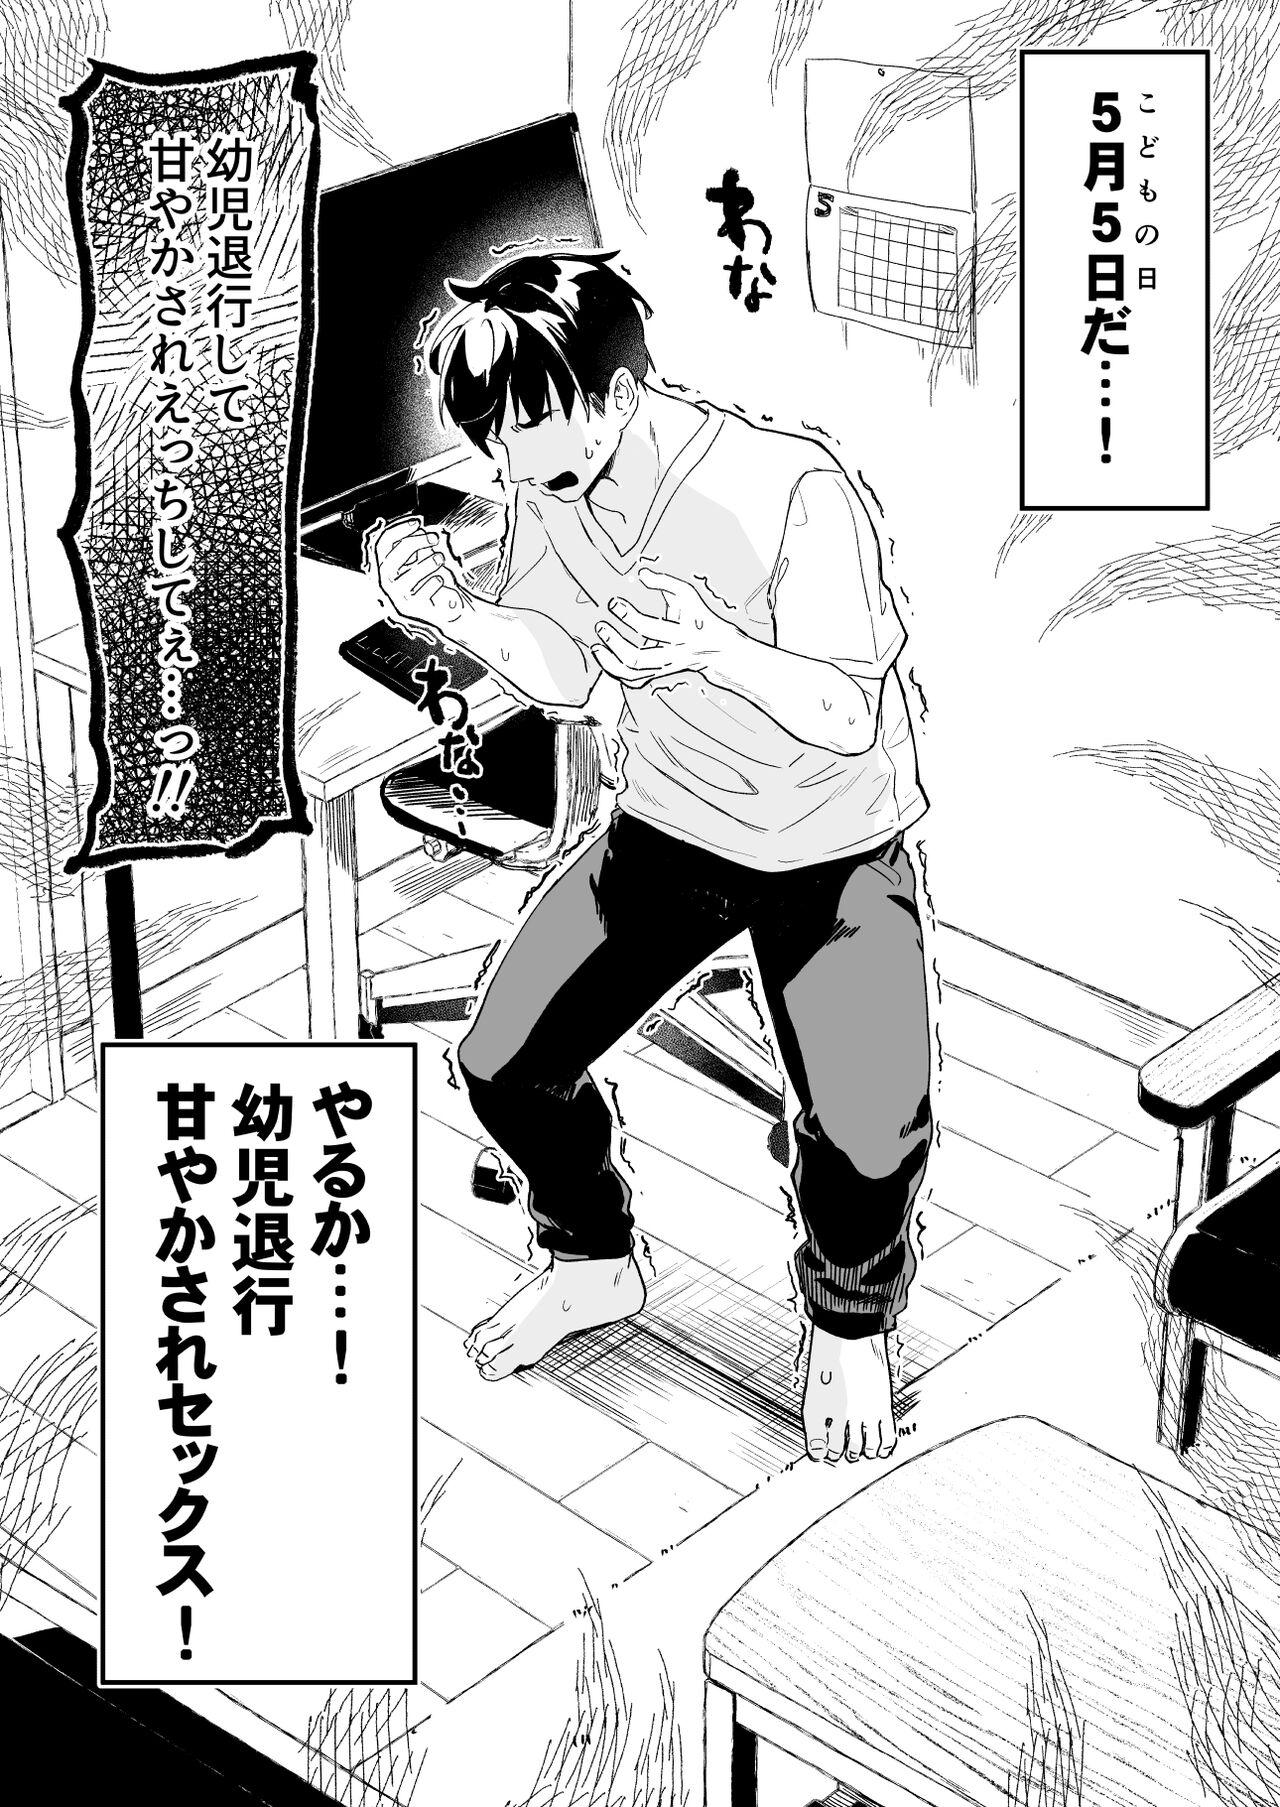 Gozada [Tamano Kedama] Kodomo no Hi (Imishin) ni Mukete Manga o Kaku - Original Gagging - Page 3